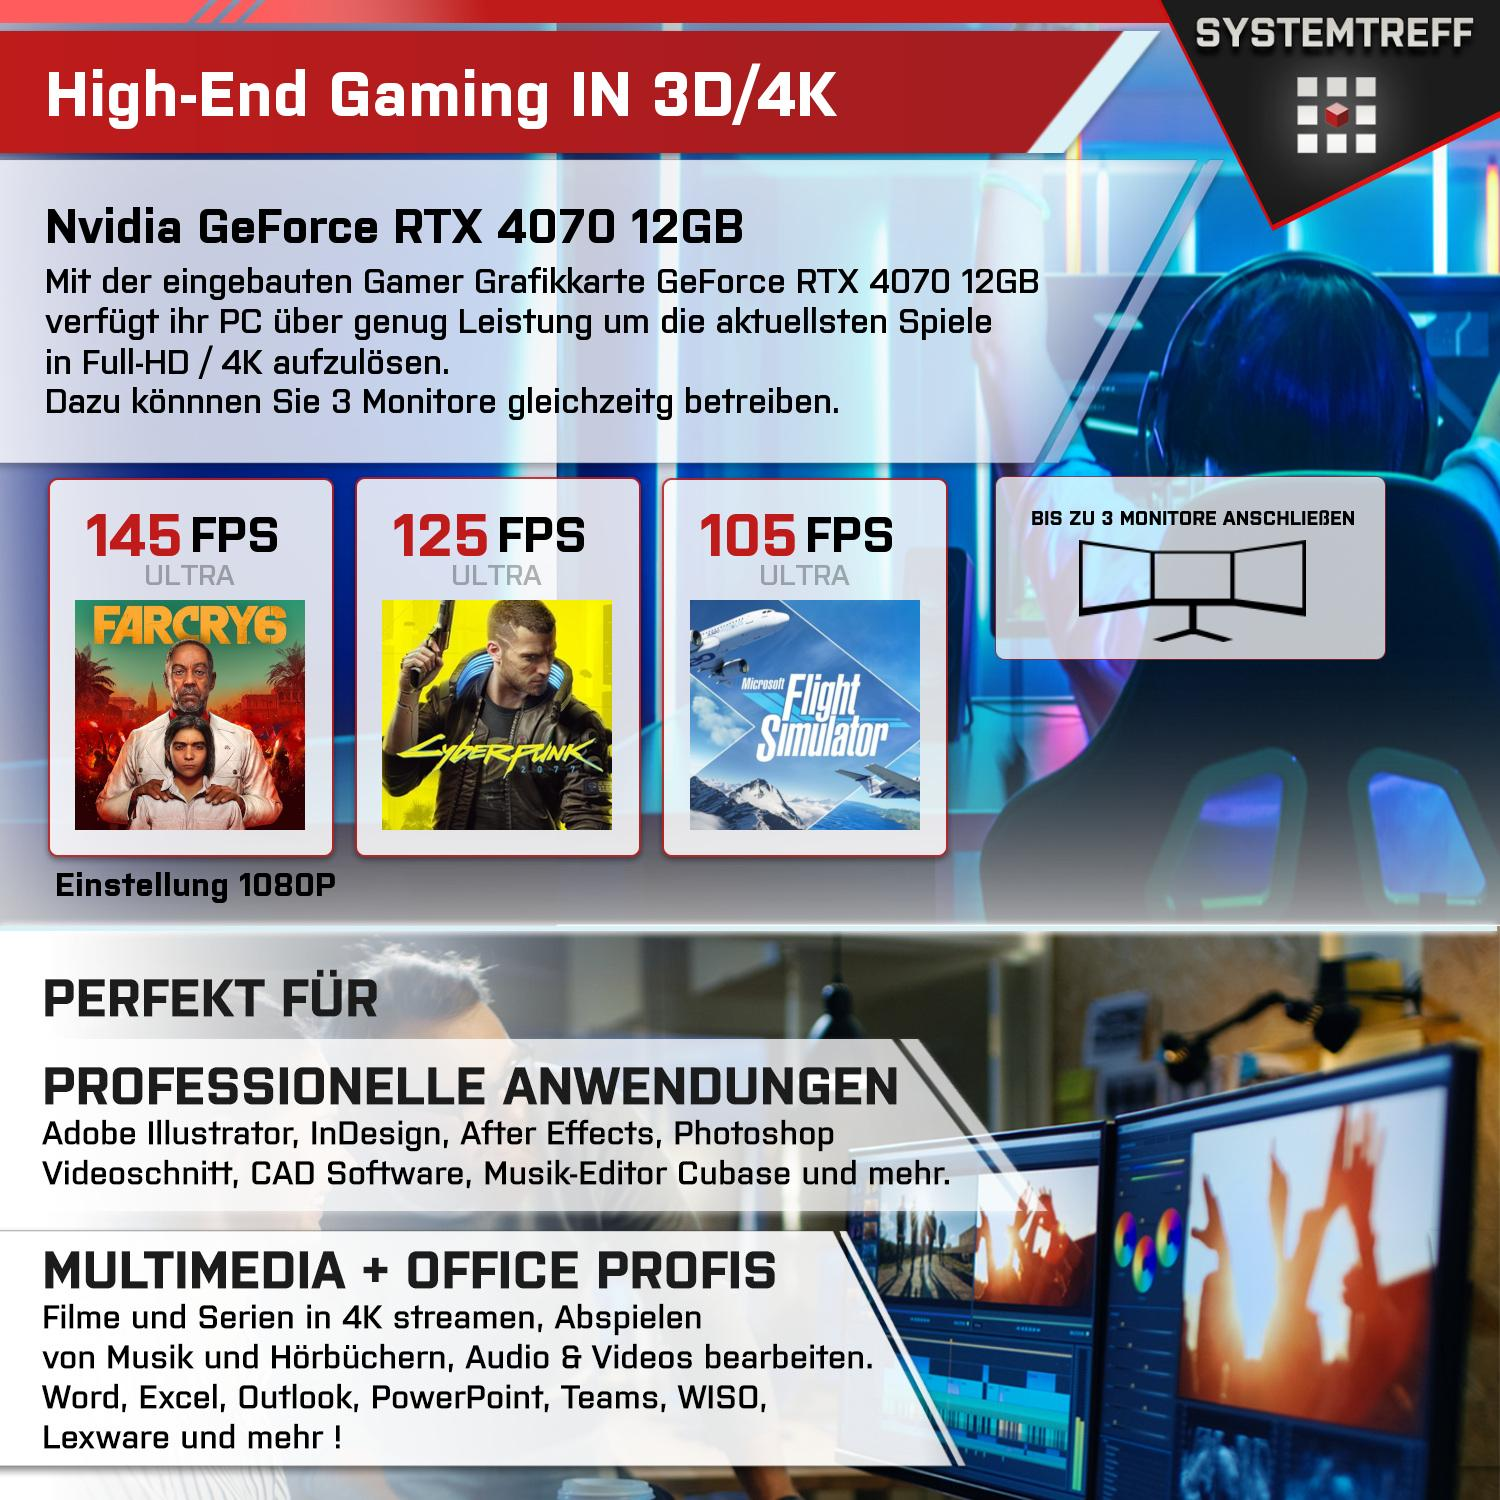 SYSTEMTREFF Gaming Komplett i7-12700KF, i7-12700KF mSSD, GDDR6, GeForce GB mit 32 RAM, 12 GB Prozessor, 12GB 4070 PC Core Intel Nvidia 1000 RTX GB Komplett